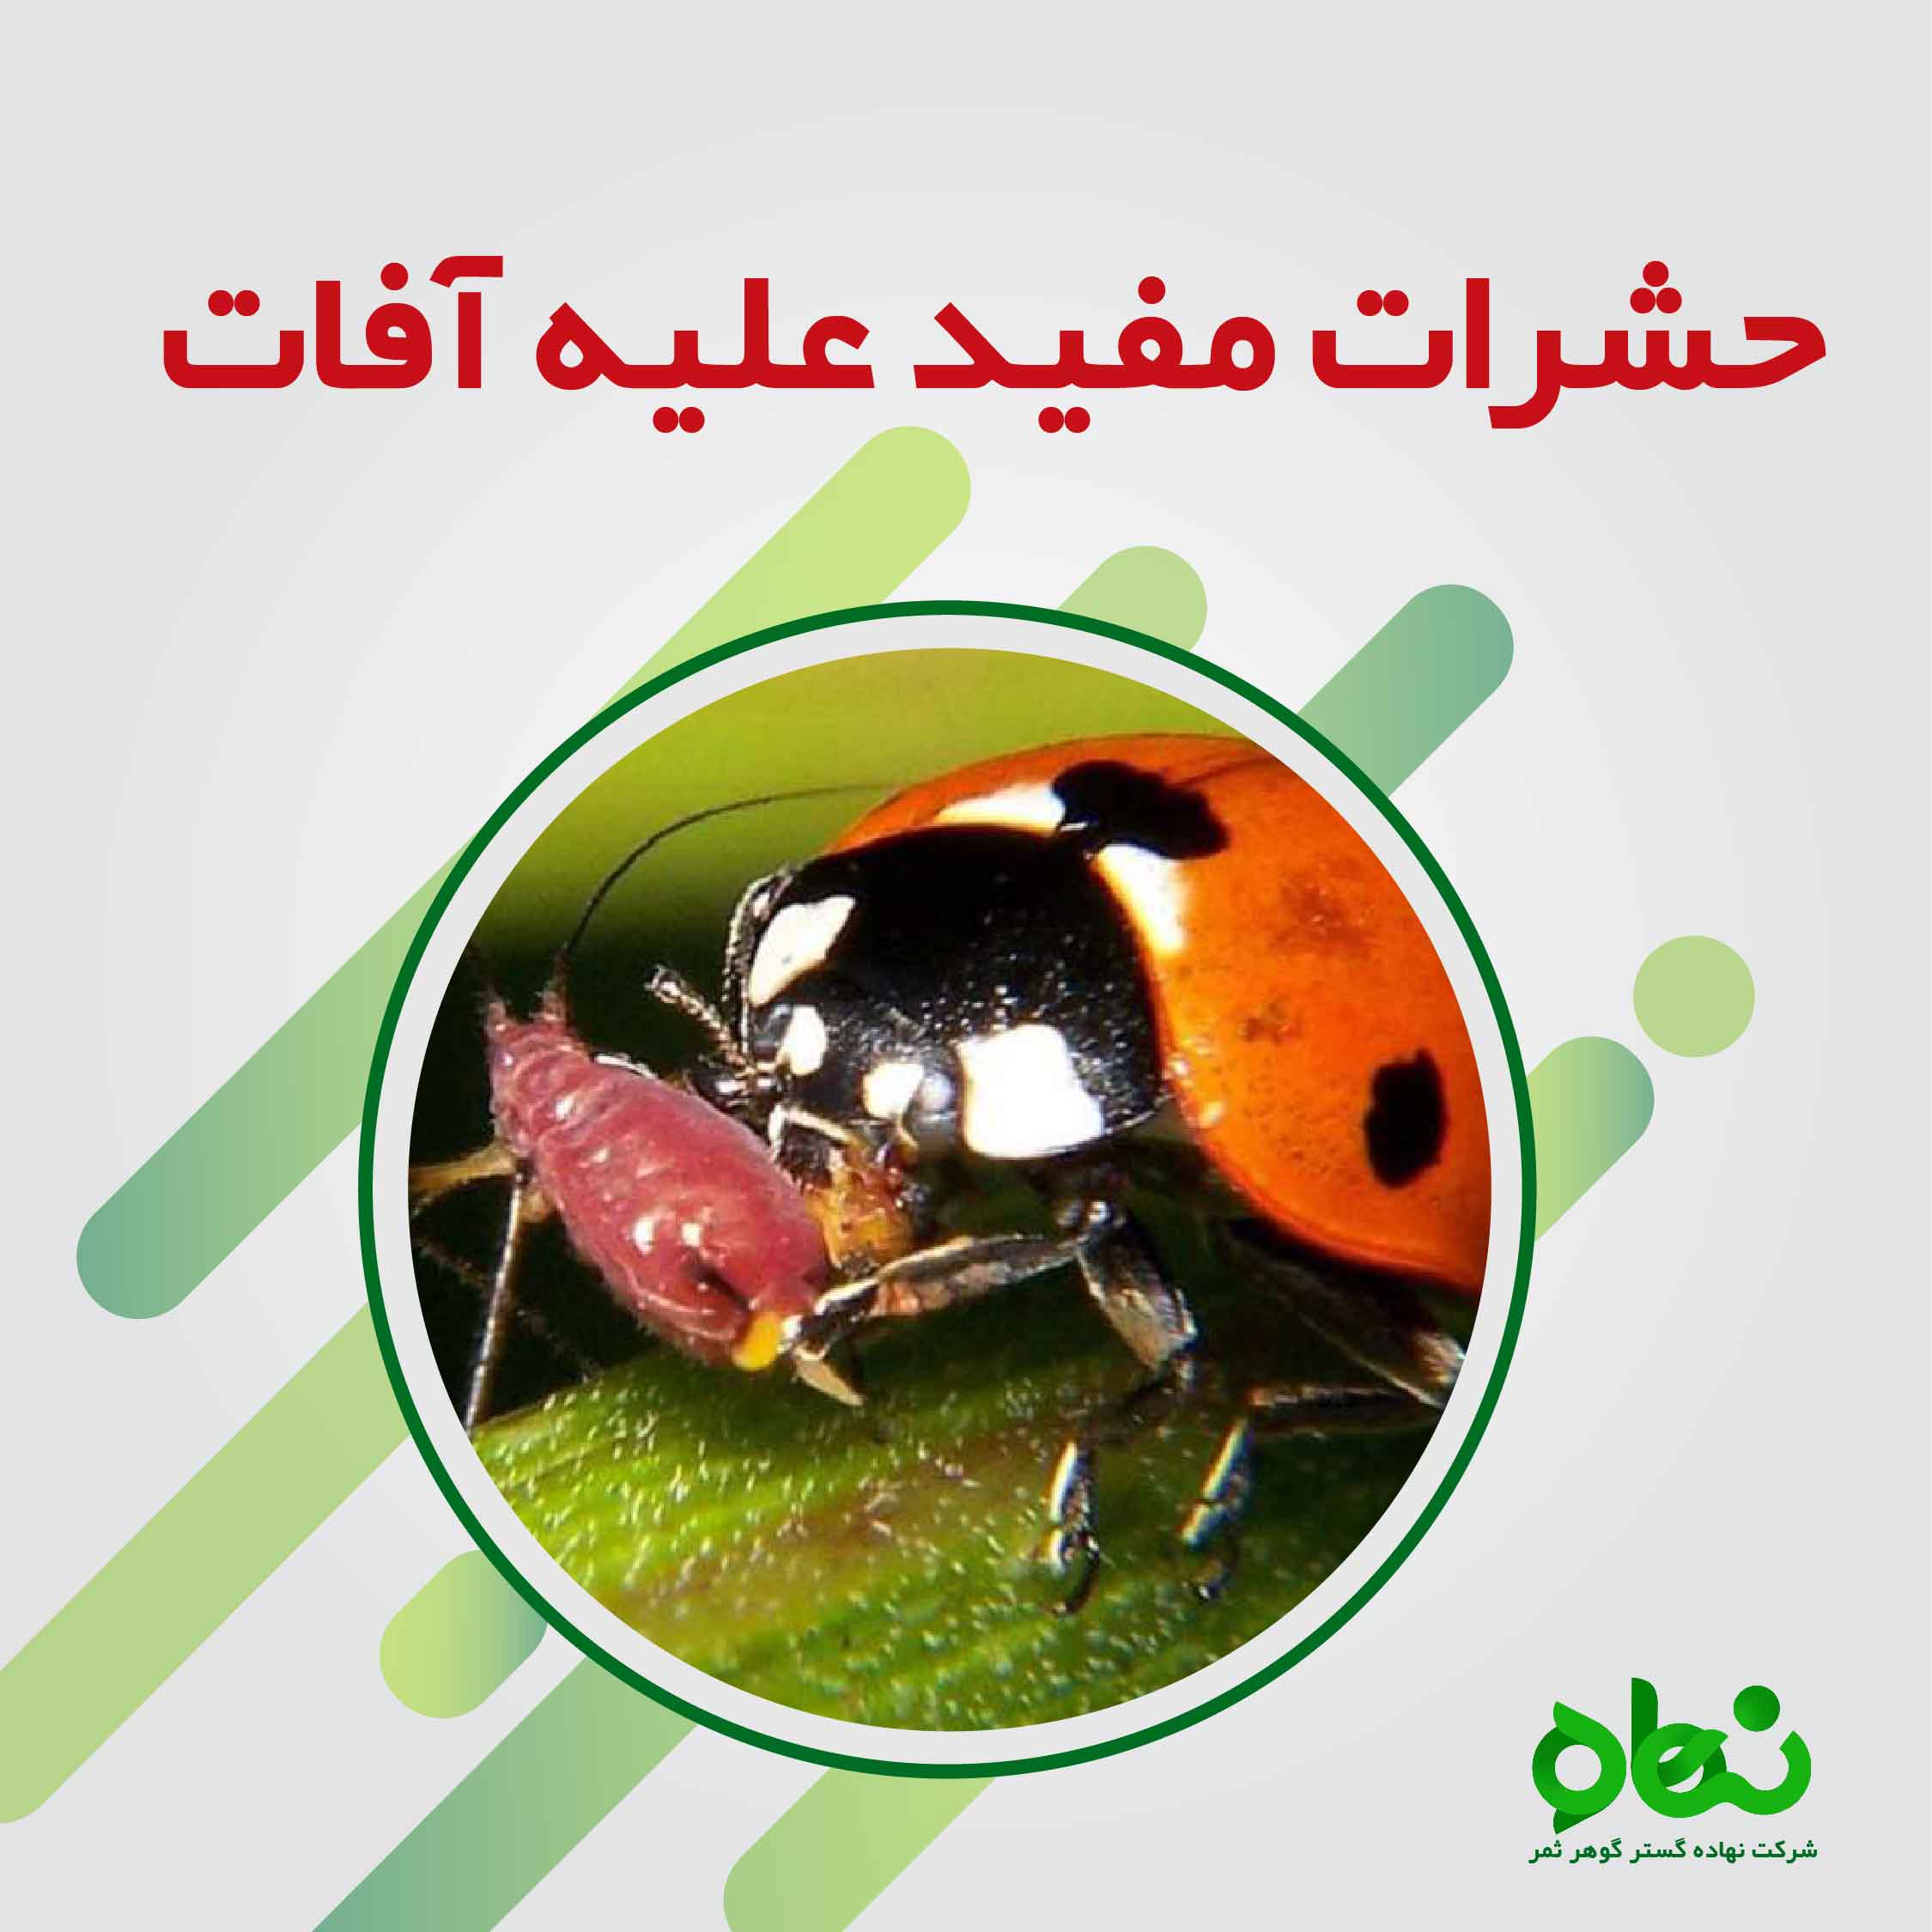 حشرات مفید علیه آفات